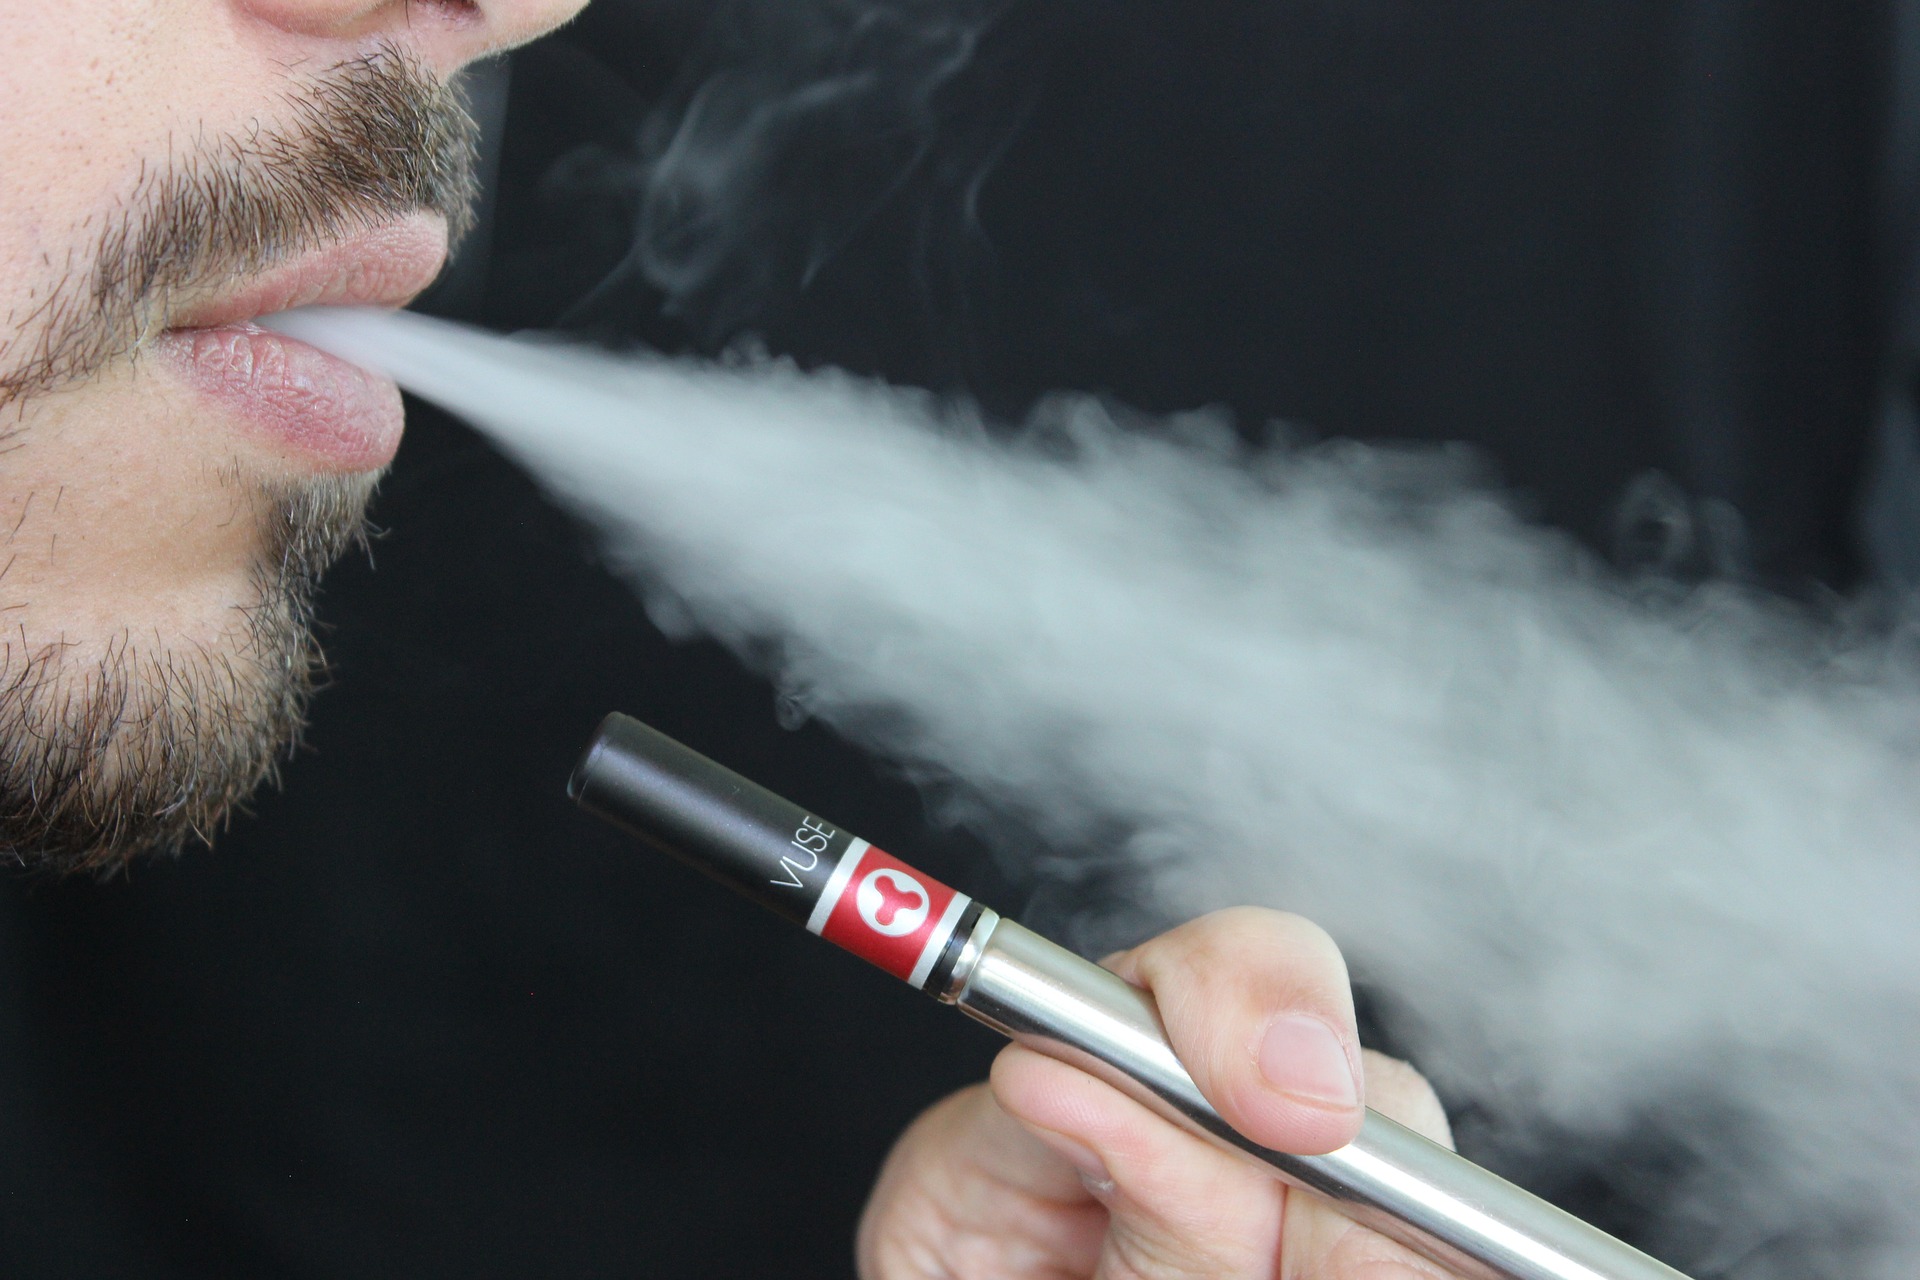 Regulation of E-Cigarettes in North America